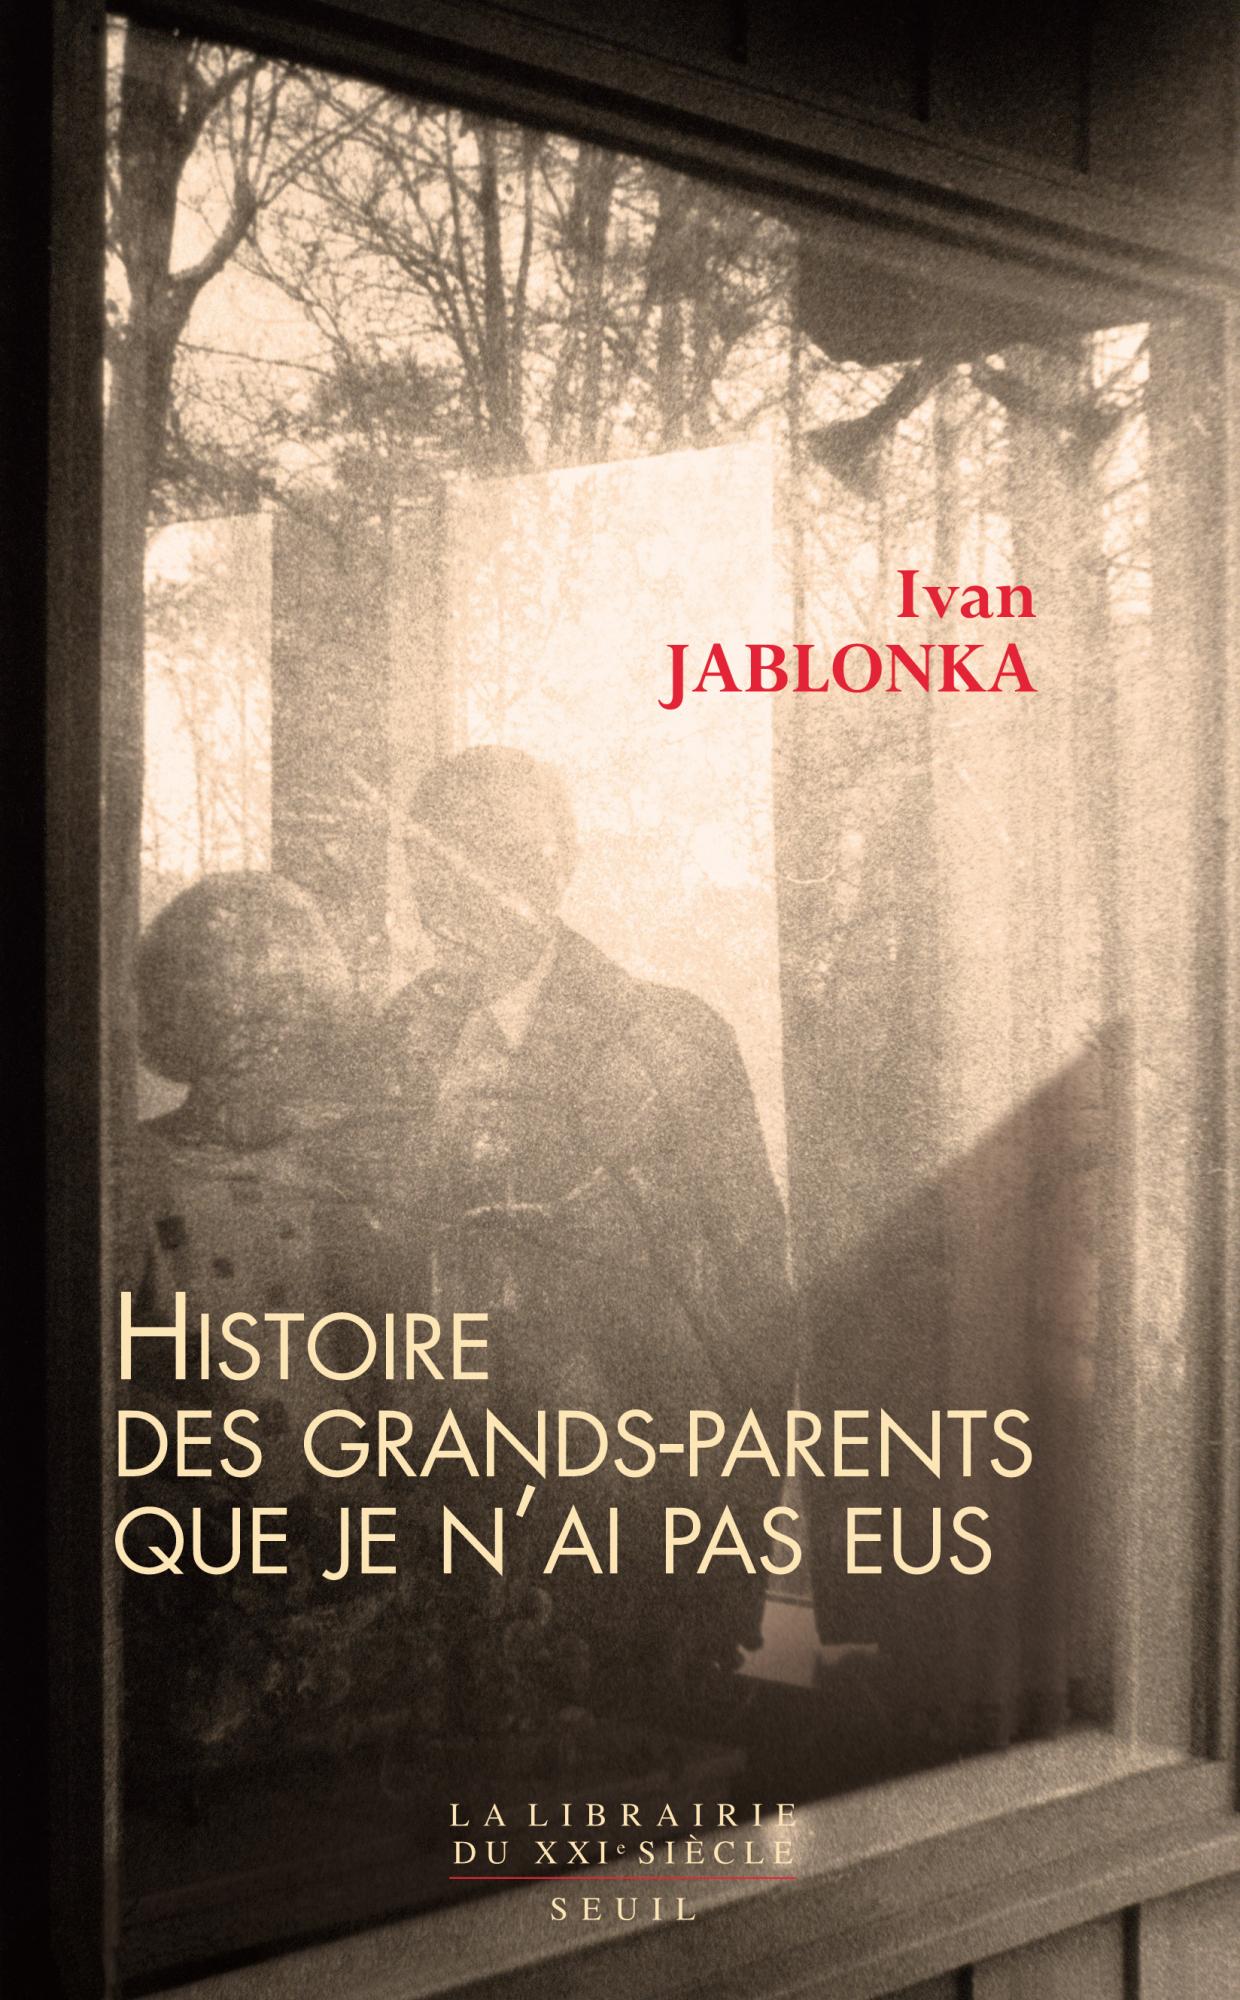 Idée lecture Ivan Jablonka  » Histoire des grands-parents que je n’ai pas eus »